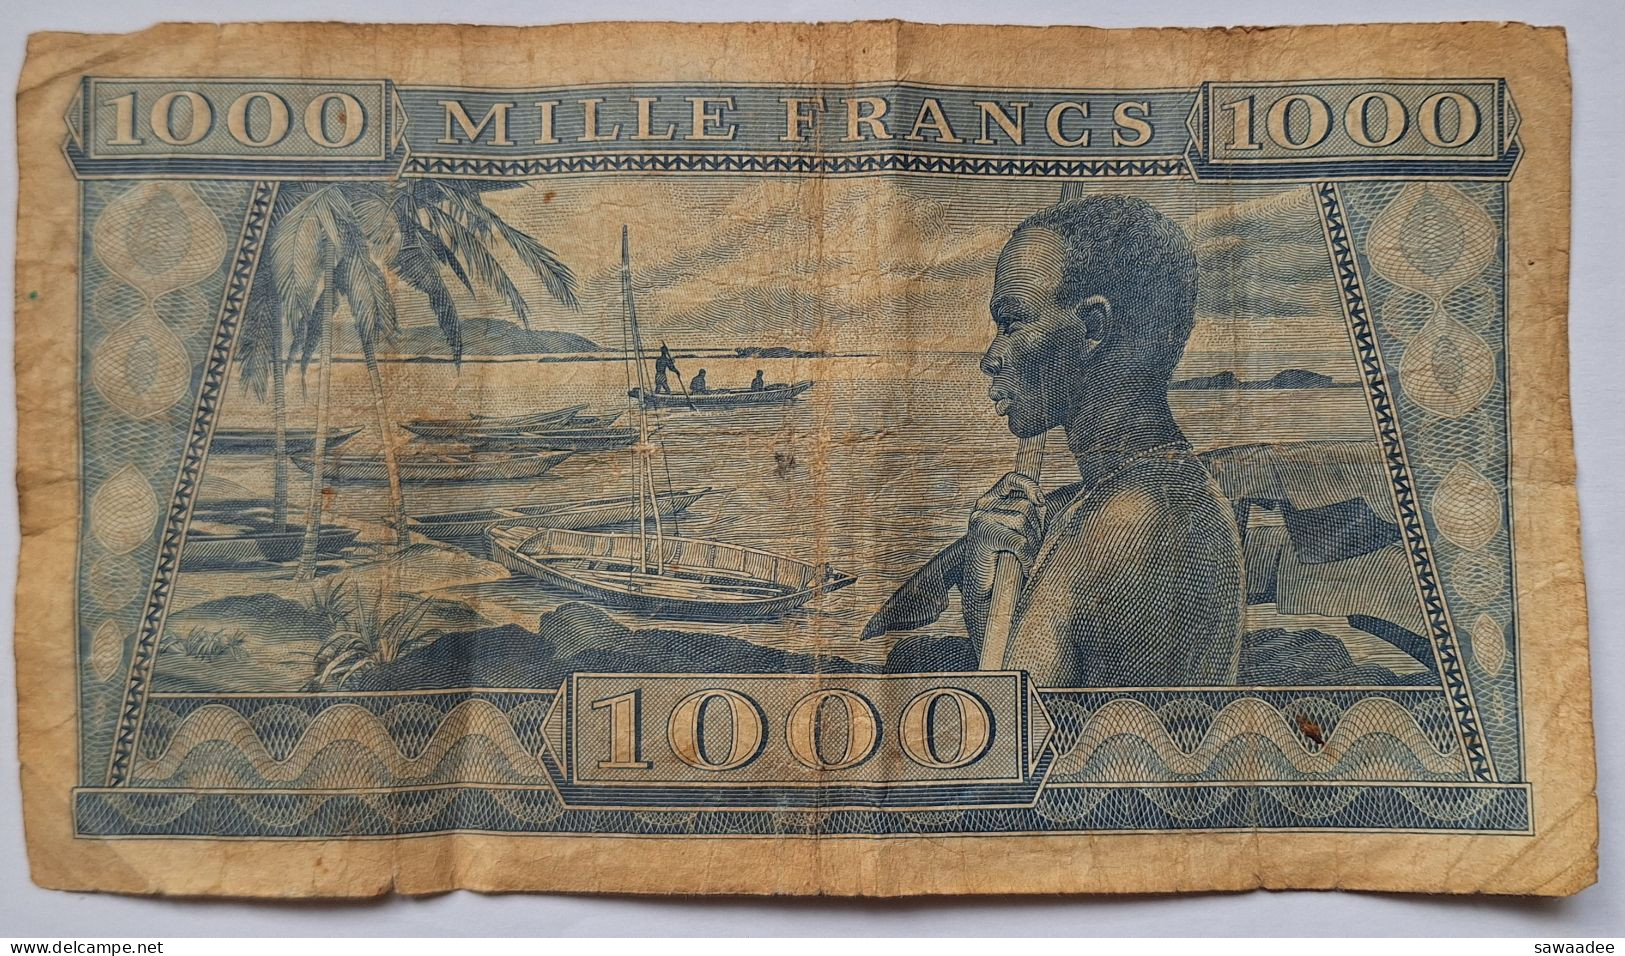 BILLET GUINEE - P.9 - 1000 FRANCS - 02/10/1958 - PORTRAIT HOMME - BORD DE MER - PIROGUES - HOMME - Guinea